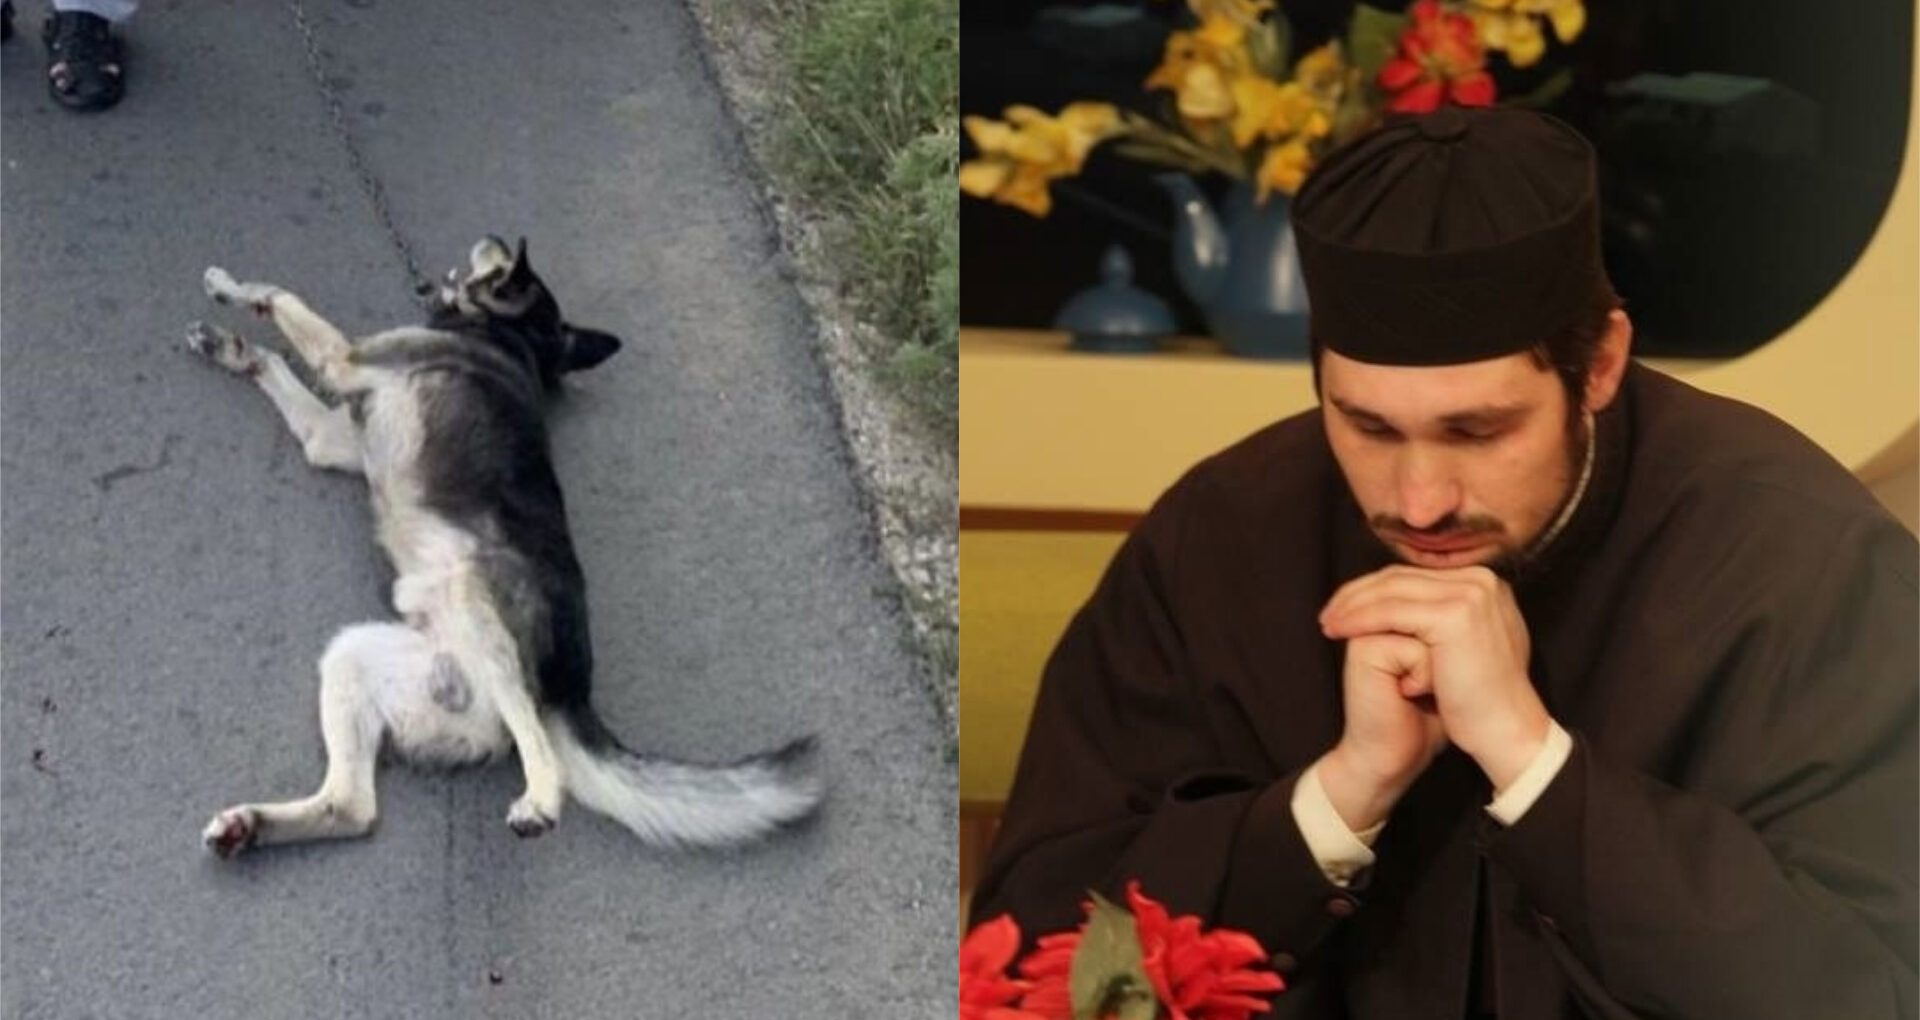 DOC/ Diaconul Ghenadie Valuța, care anterior a legat un câine de automobil, a fost exclus de Mitropolie din clerul Bisericii Ortodoxe din Moldova: preotul este acuzat de violență asupra membrilor familiei